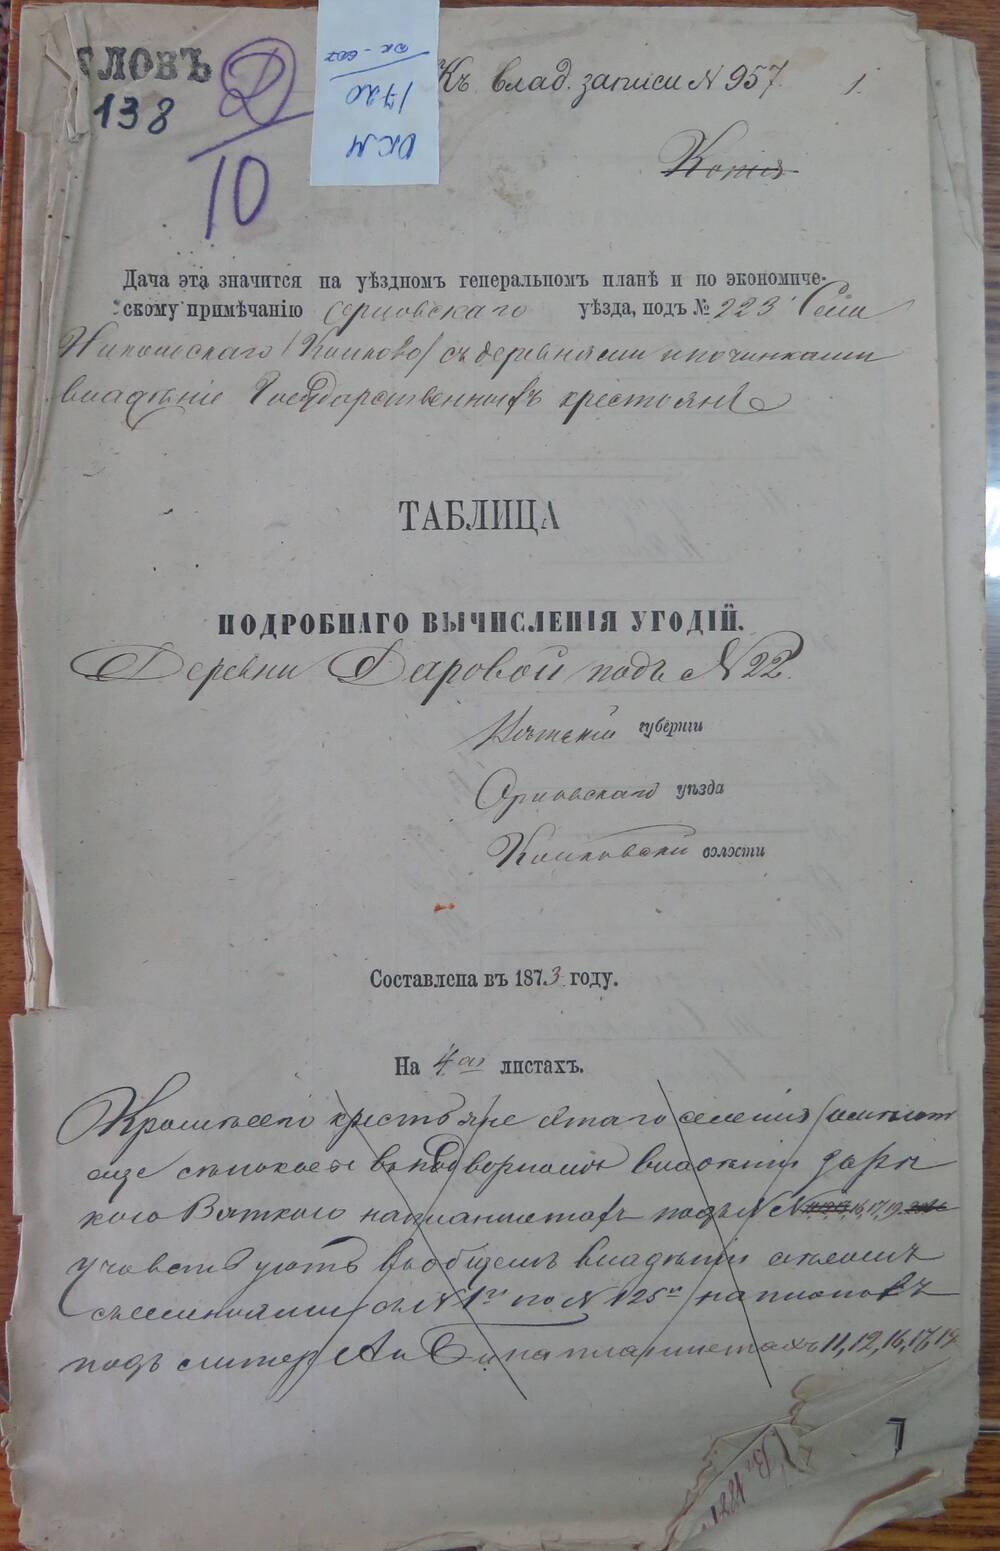 Таблица подробного вычисления угодий  к записи № 957 Вятской губернии, Орловского уезда, Колковской волости.
Составлена в 1873 году.